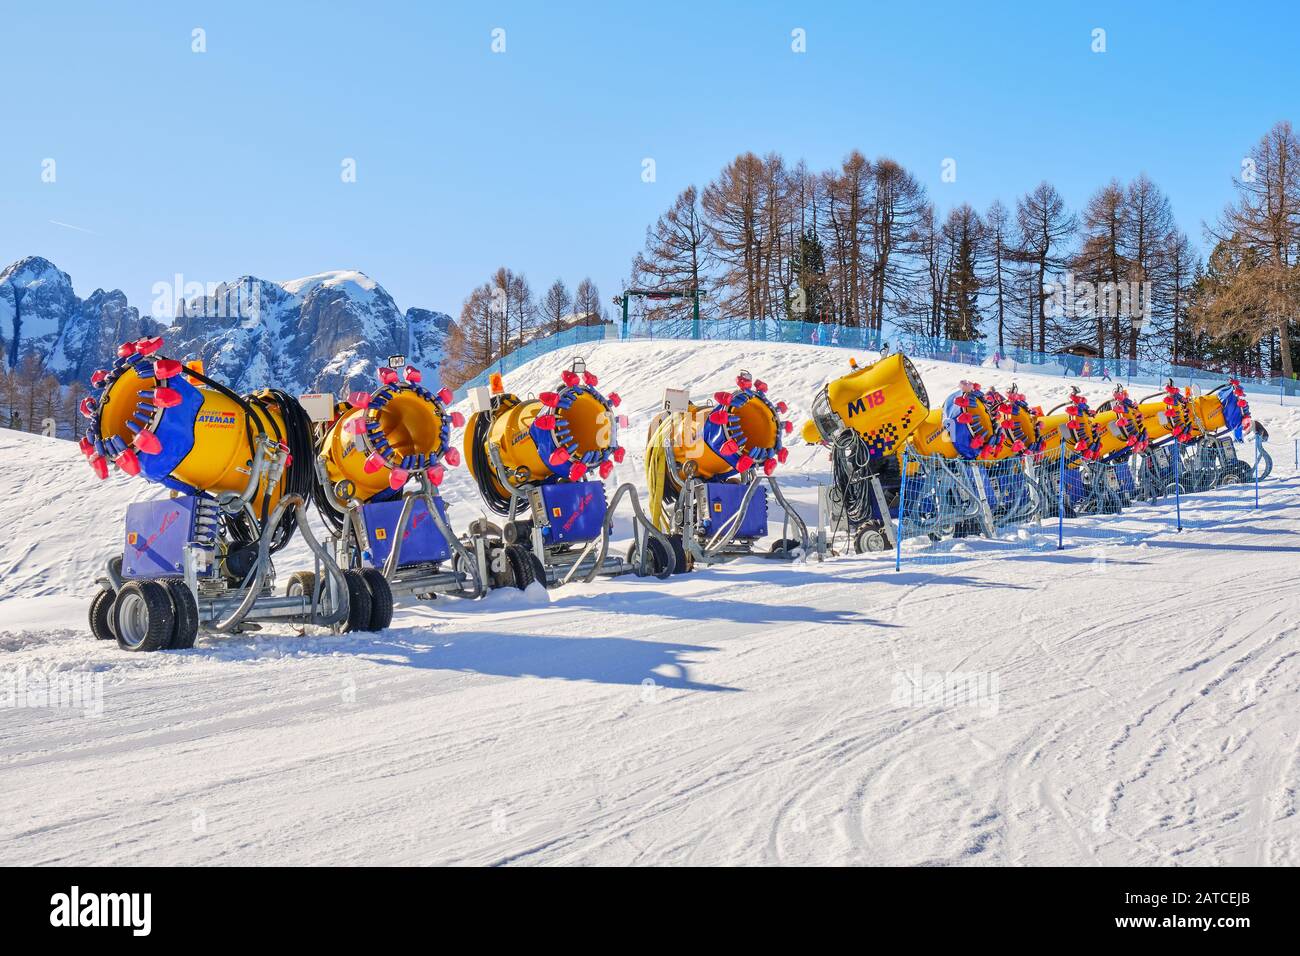 Dolomiti, Italia - 23 gennaio 2020: Fila di cannoni da neve (cannoni) con marchio Latemar, di TechnoAlpin, schierata su una pista da sci nel dominio della Val di Fassa Foto Stock